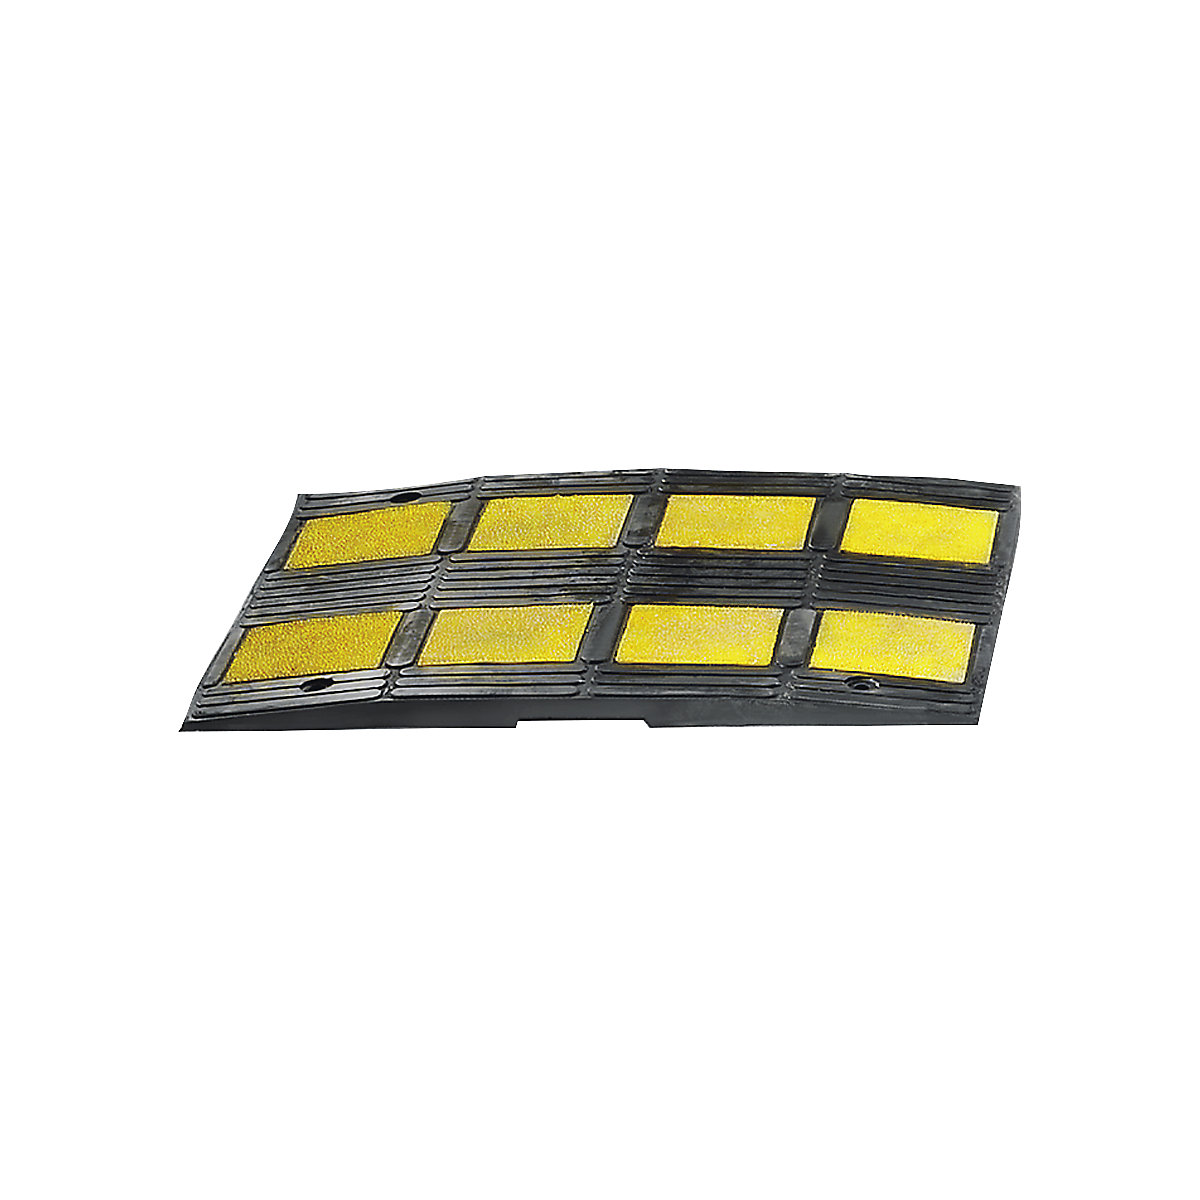 Verkeersdrempel gemaakt van gerecycled rubber, geel / zwart, voor richtsnelheid max. 35 km/h-5